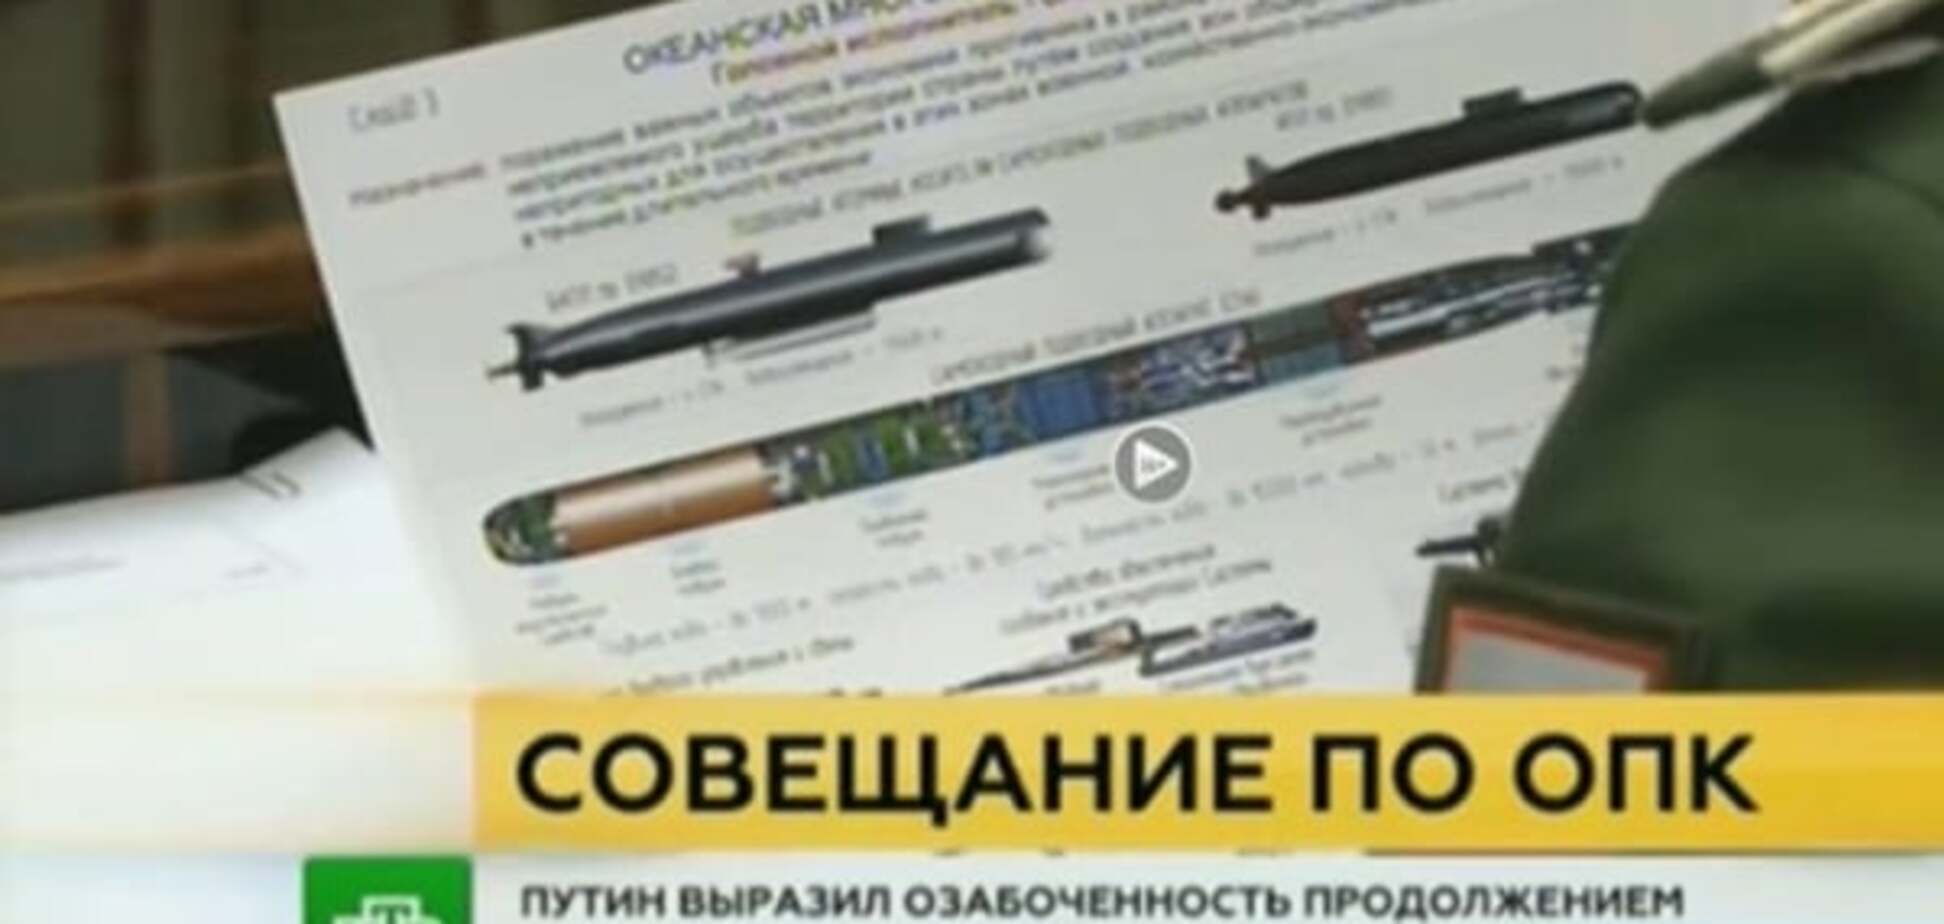 Упс: секретные документы о новейшем вооружении России случайно попали в эфир